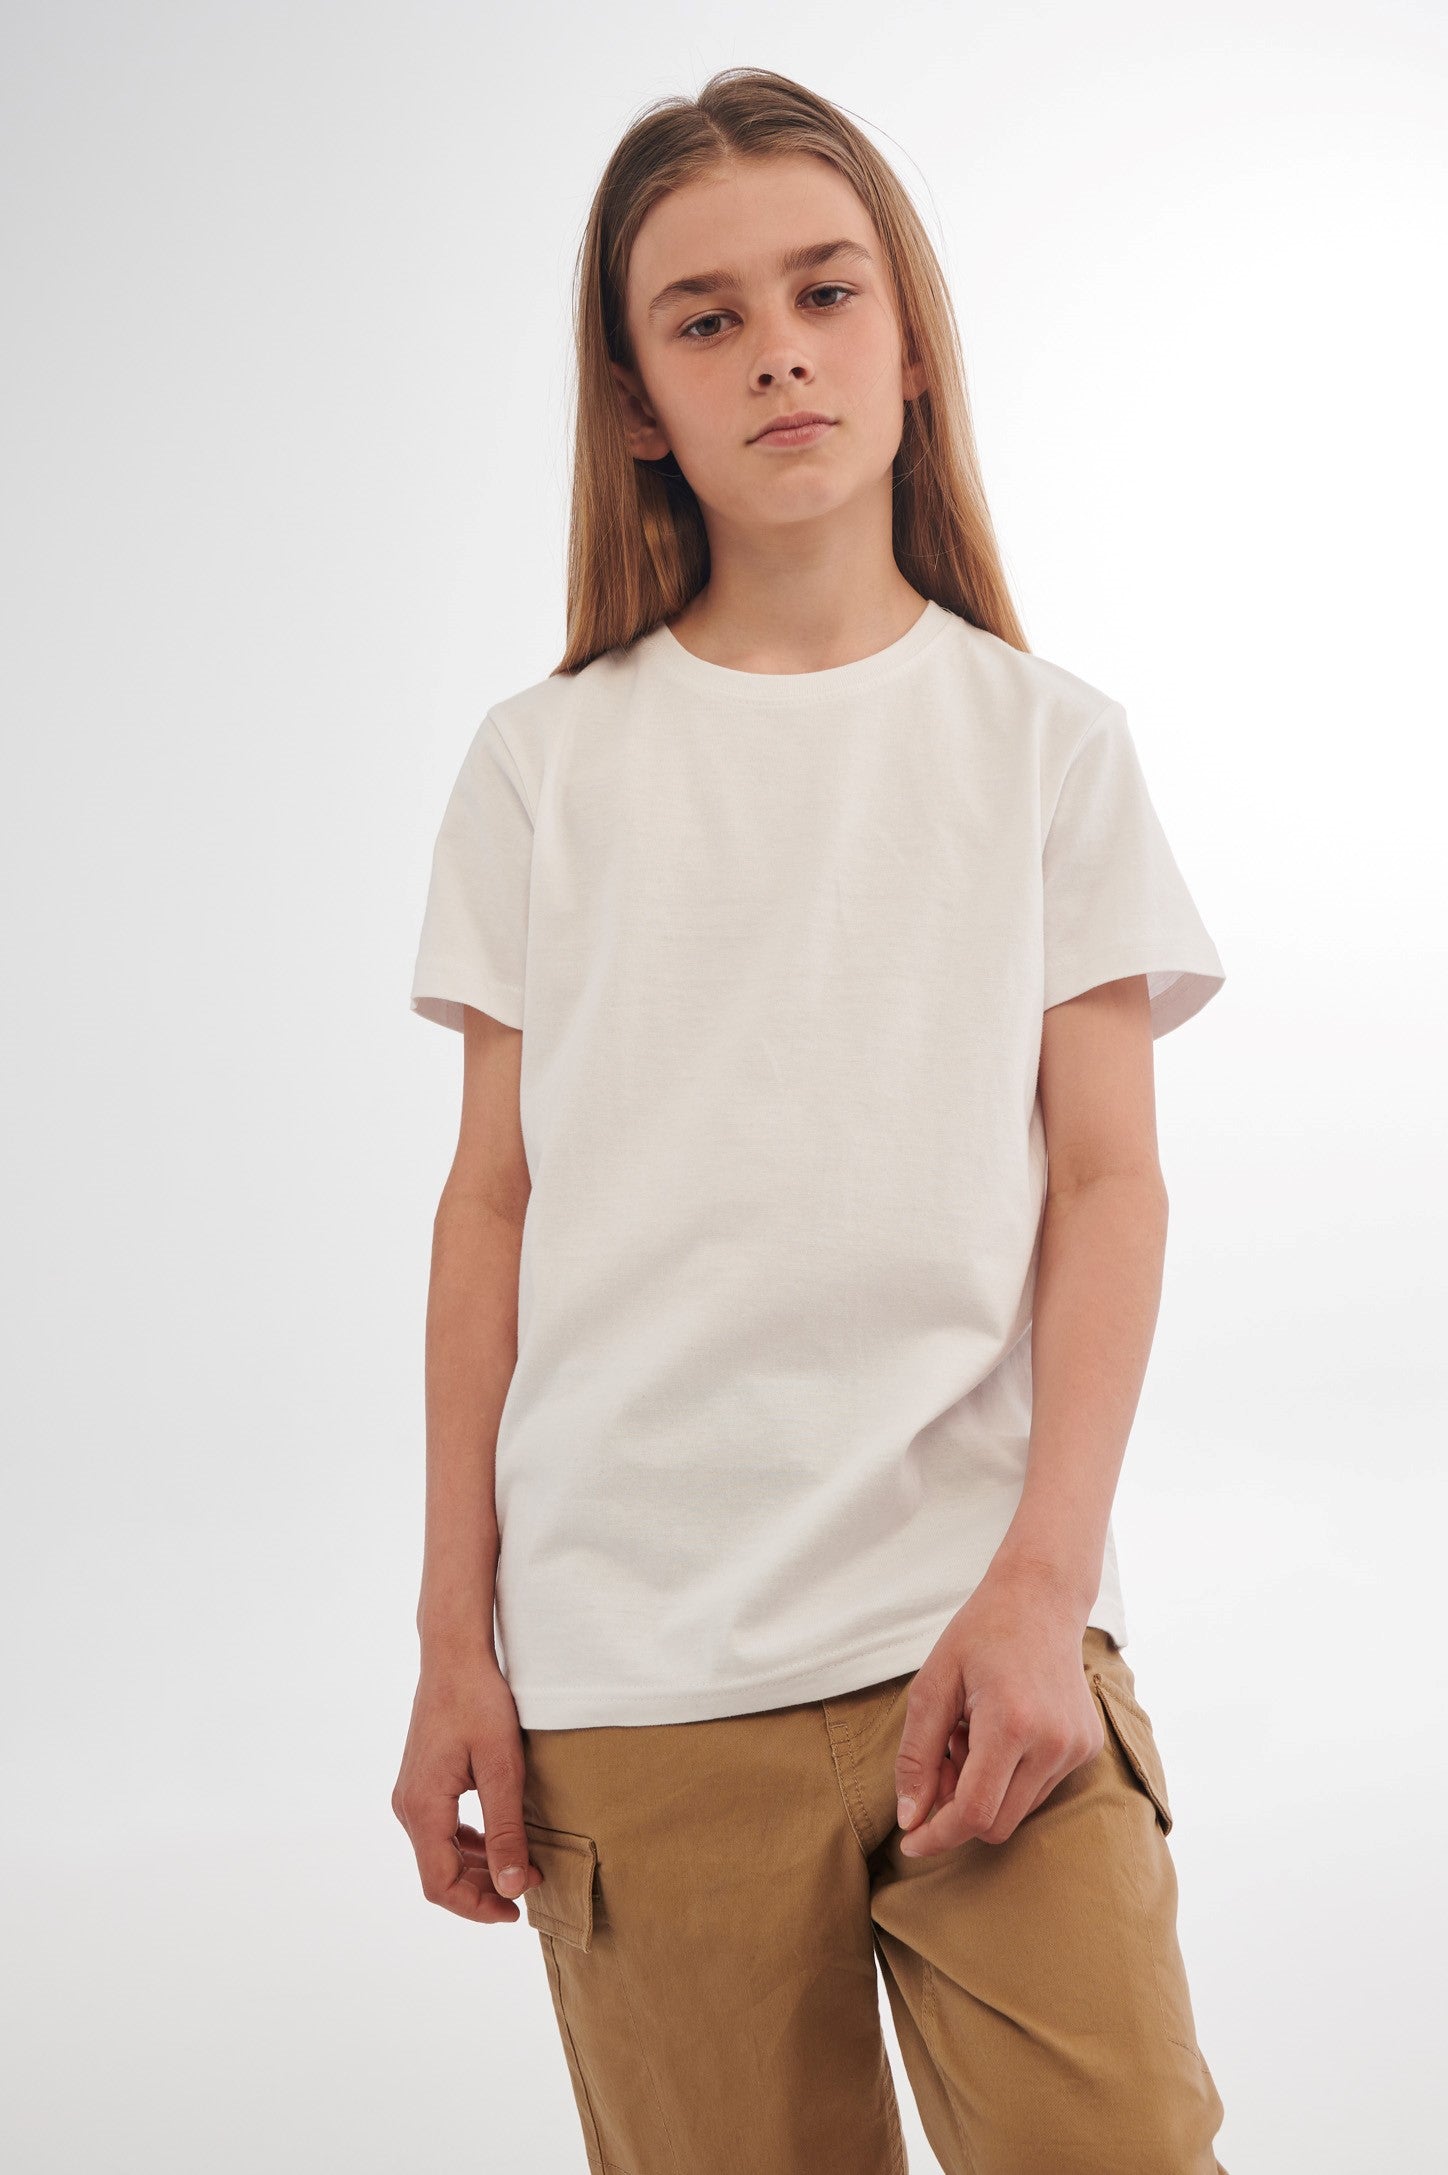 T-shirt en coton, 3/20$ - Ado garçon && BLANC